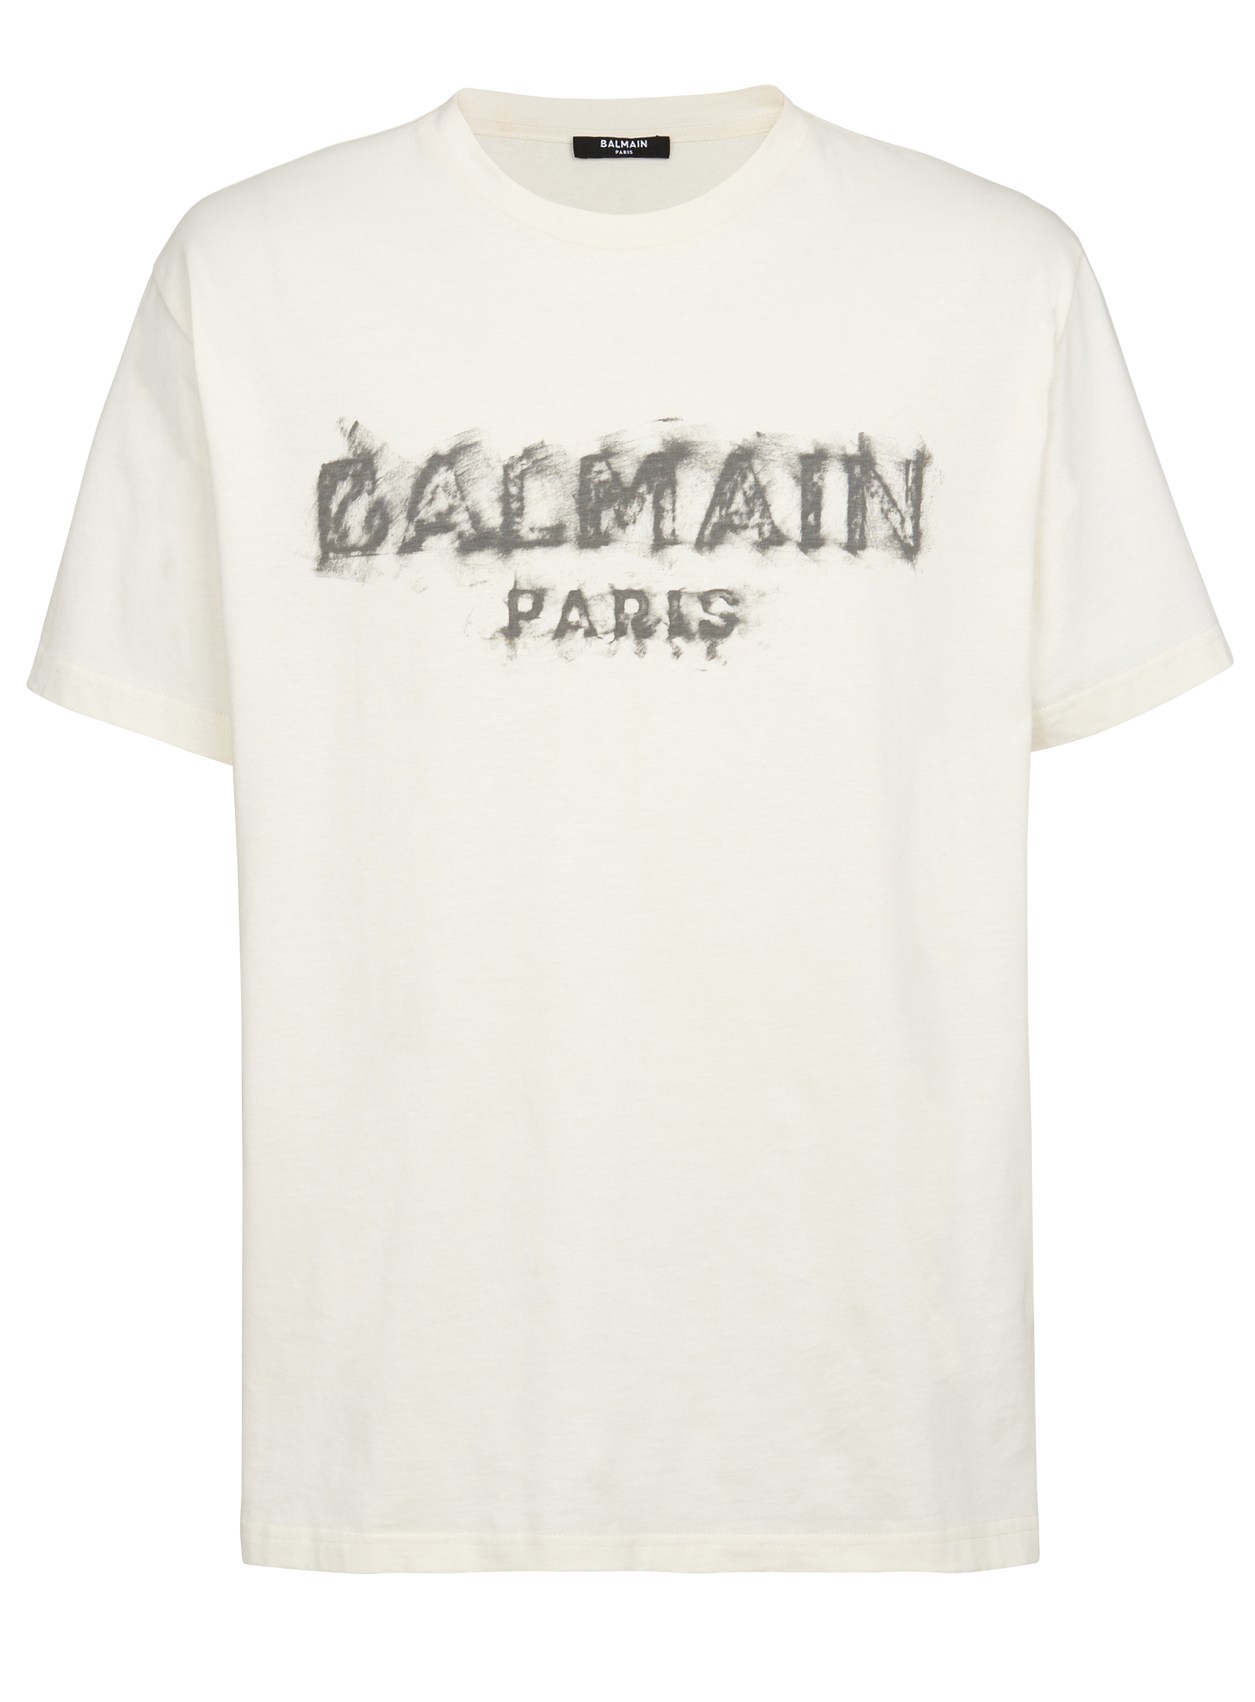 BALMAIN T-SHIRT (BULKY - BEIGE - PureAtlanta.com